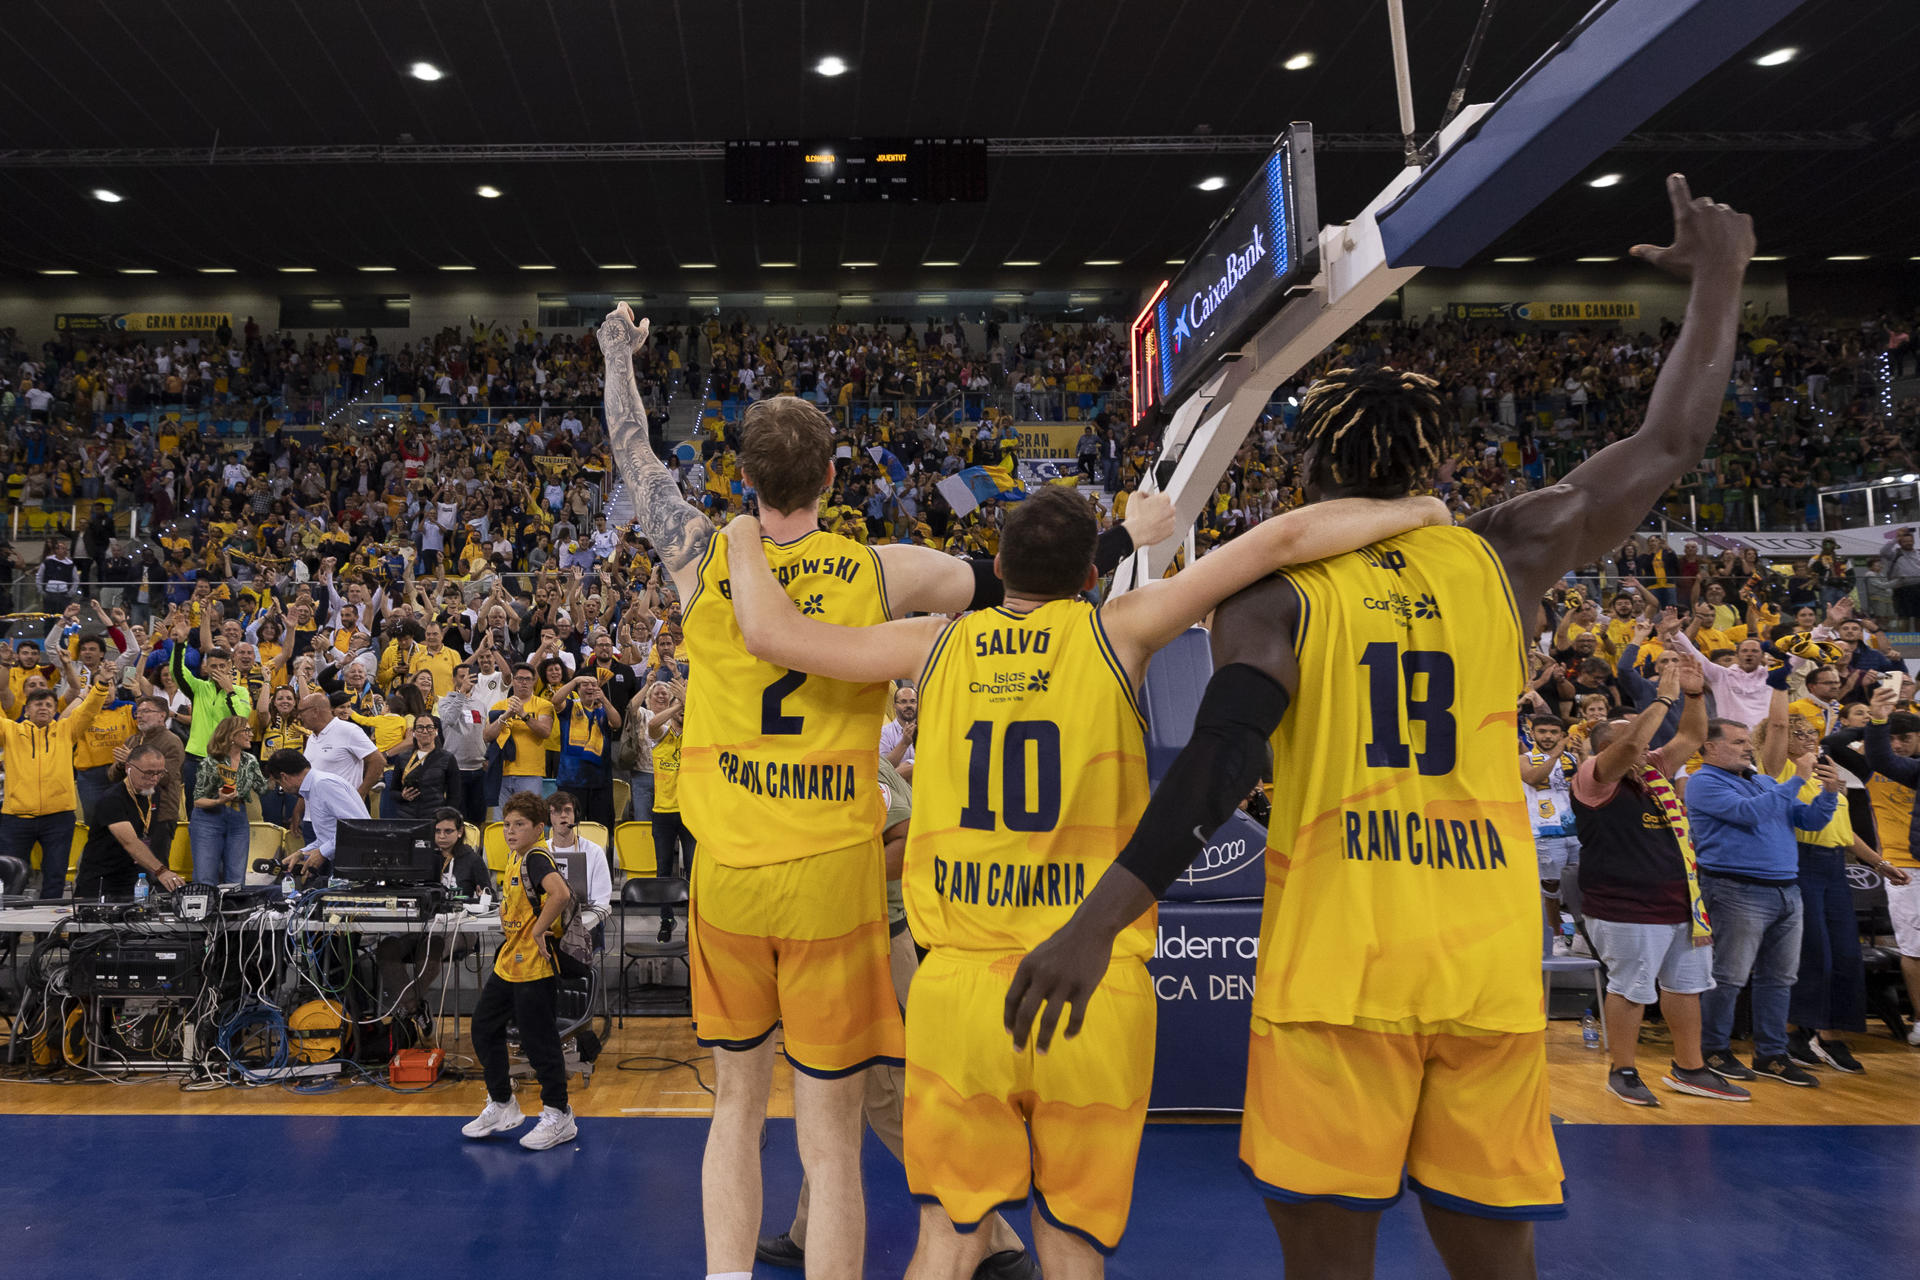 Foto de archivo: Los jugadores del Gran Canaria celebran la victoria ante el Joventut en la semifinal de la Eurocopa de baloncesto, disputada el pasado 26 de abril. EFE/Quique Curbelo